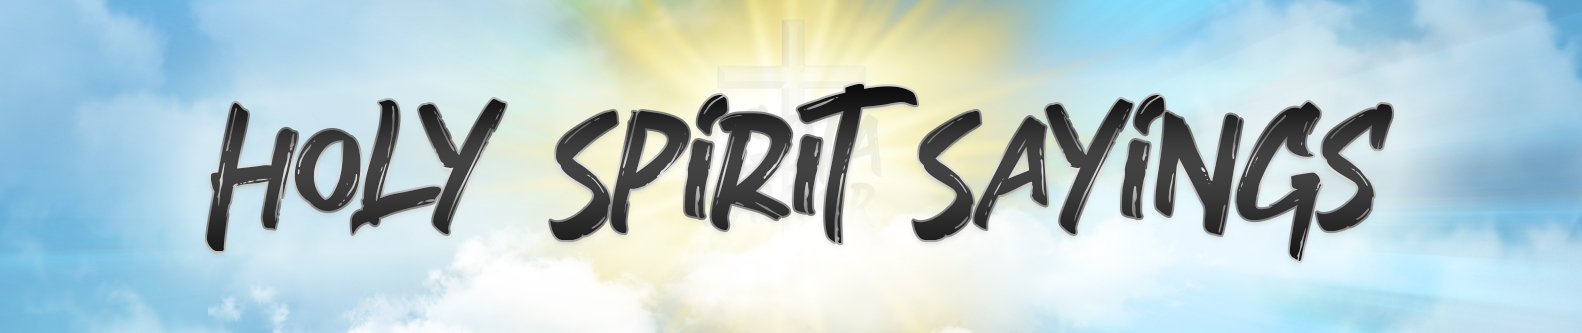 Holy Spirit Sayings